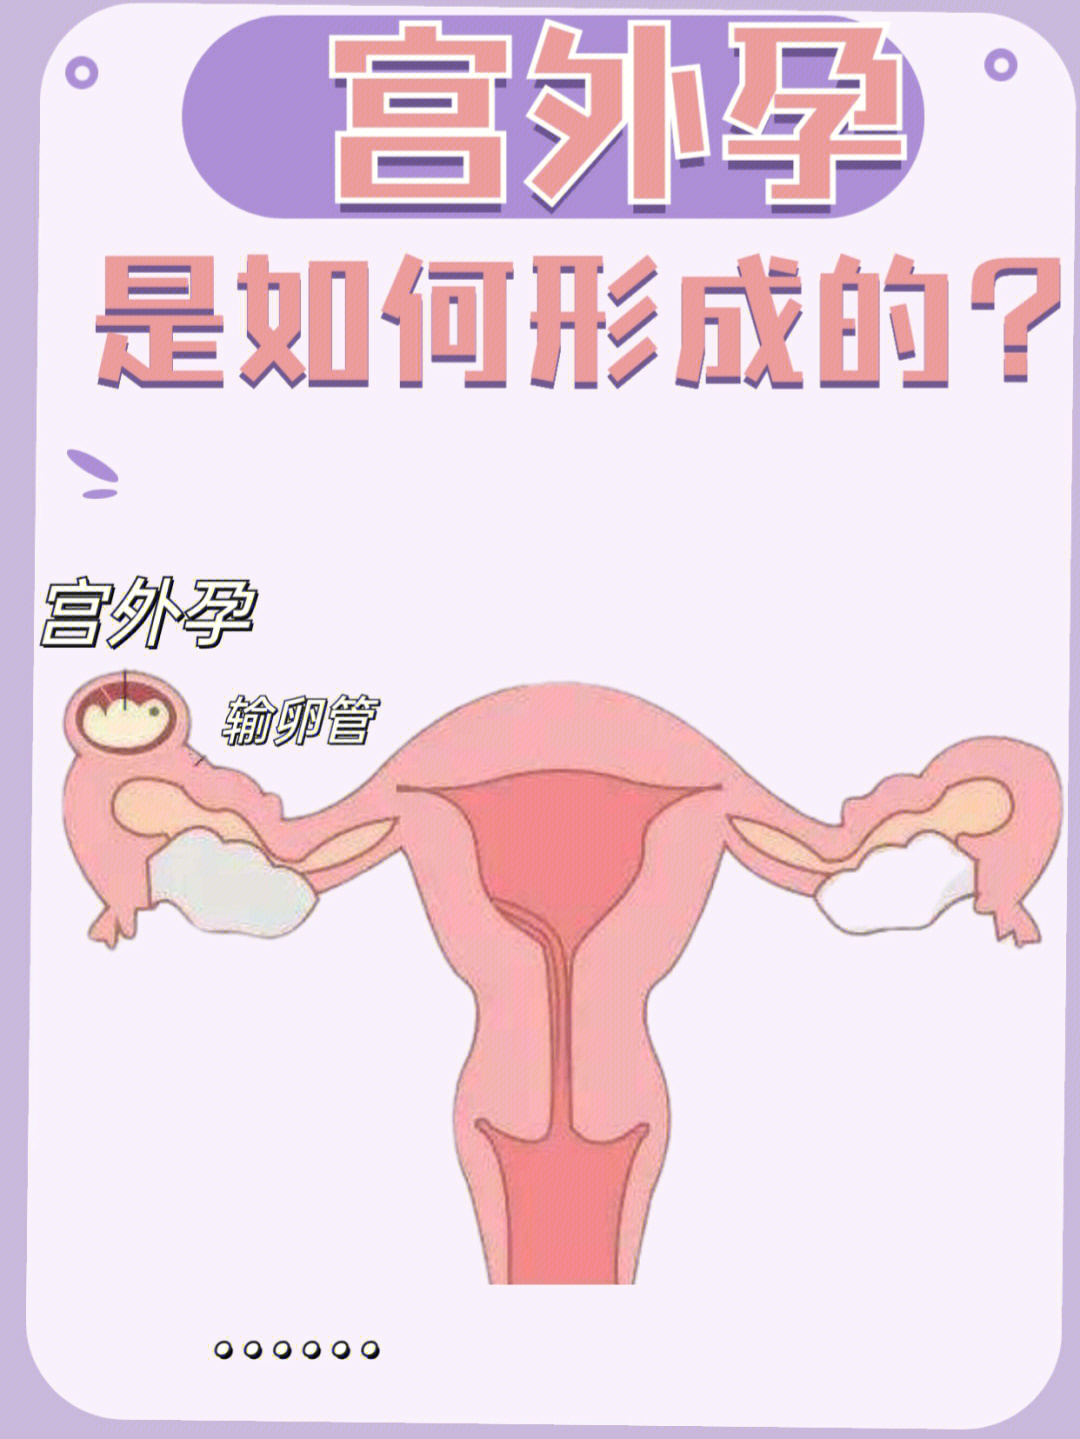 受精卵在子宫体腔以外着床称为异位妊娠,习称宫外孕